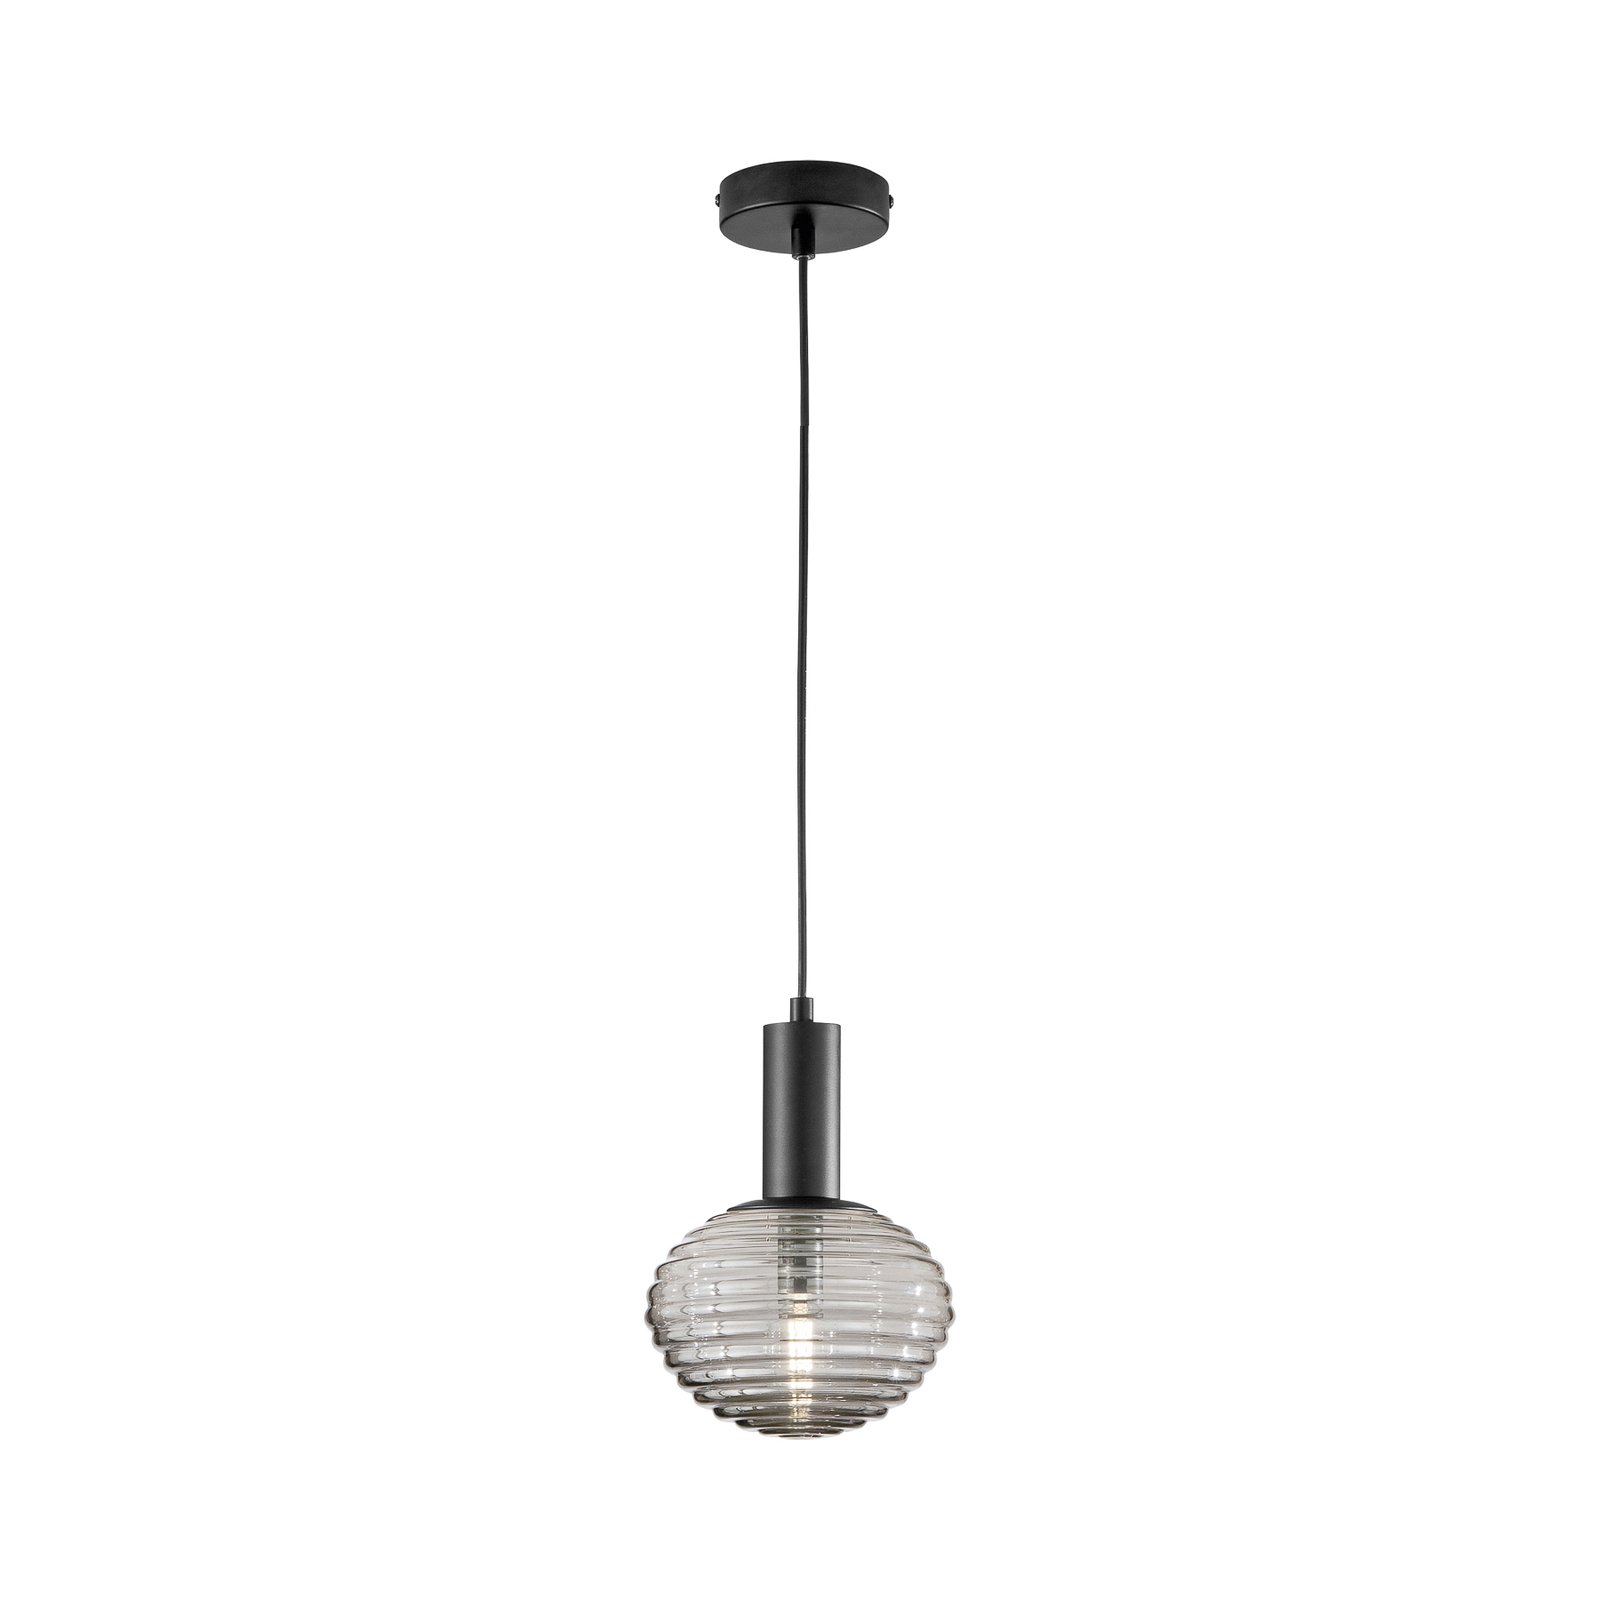 Ripple hanglamp, zwart/rookgrijs, Ø 18 cm